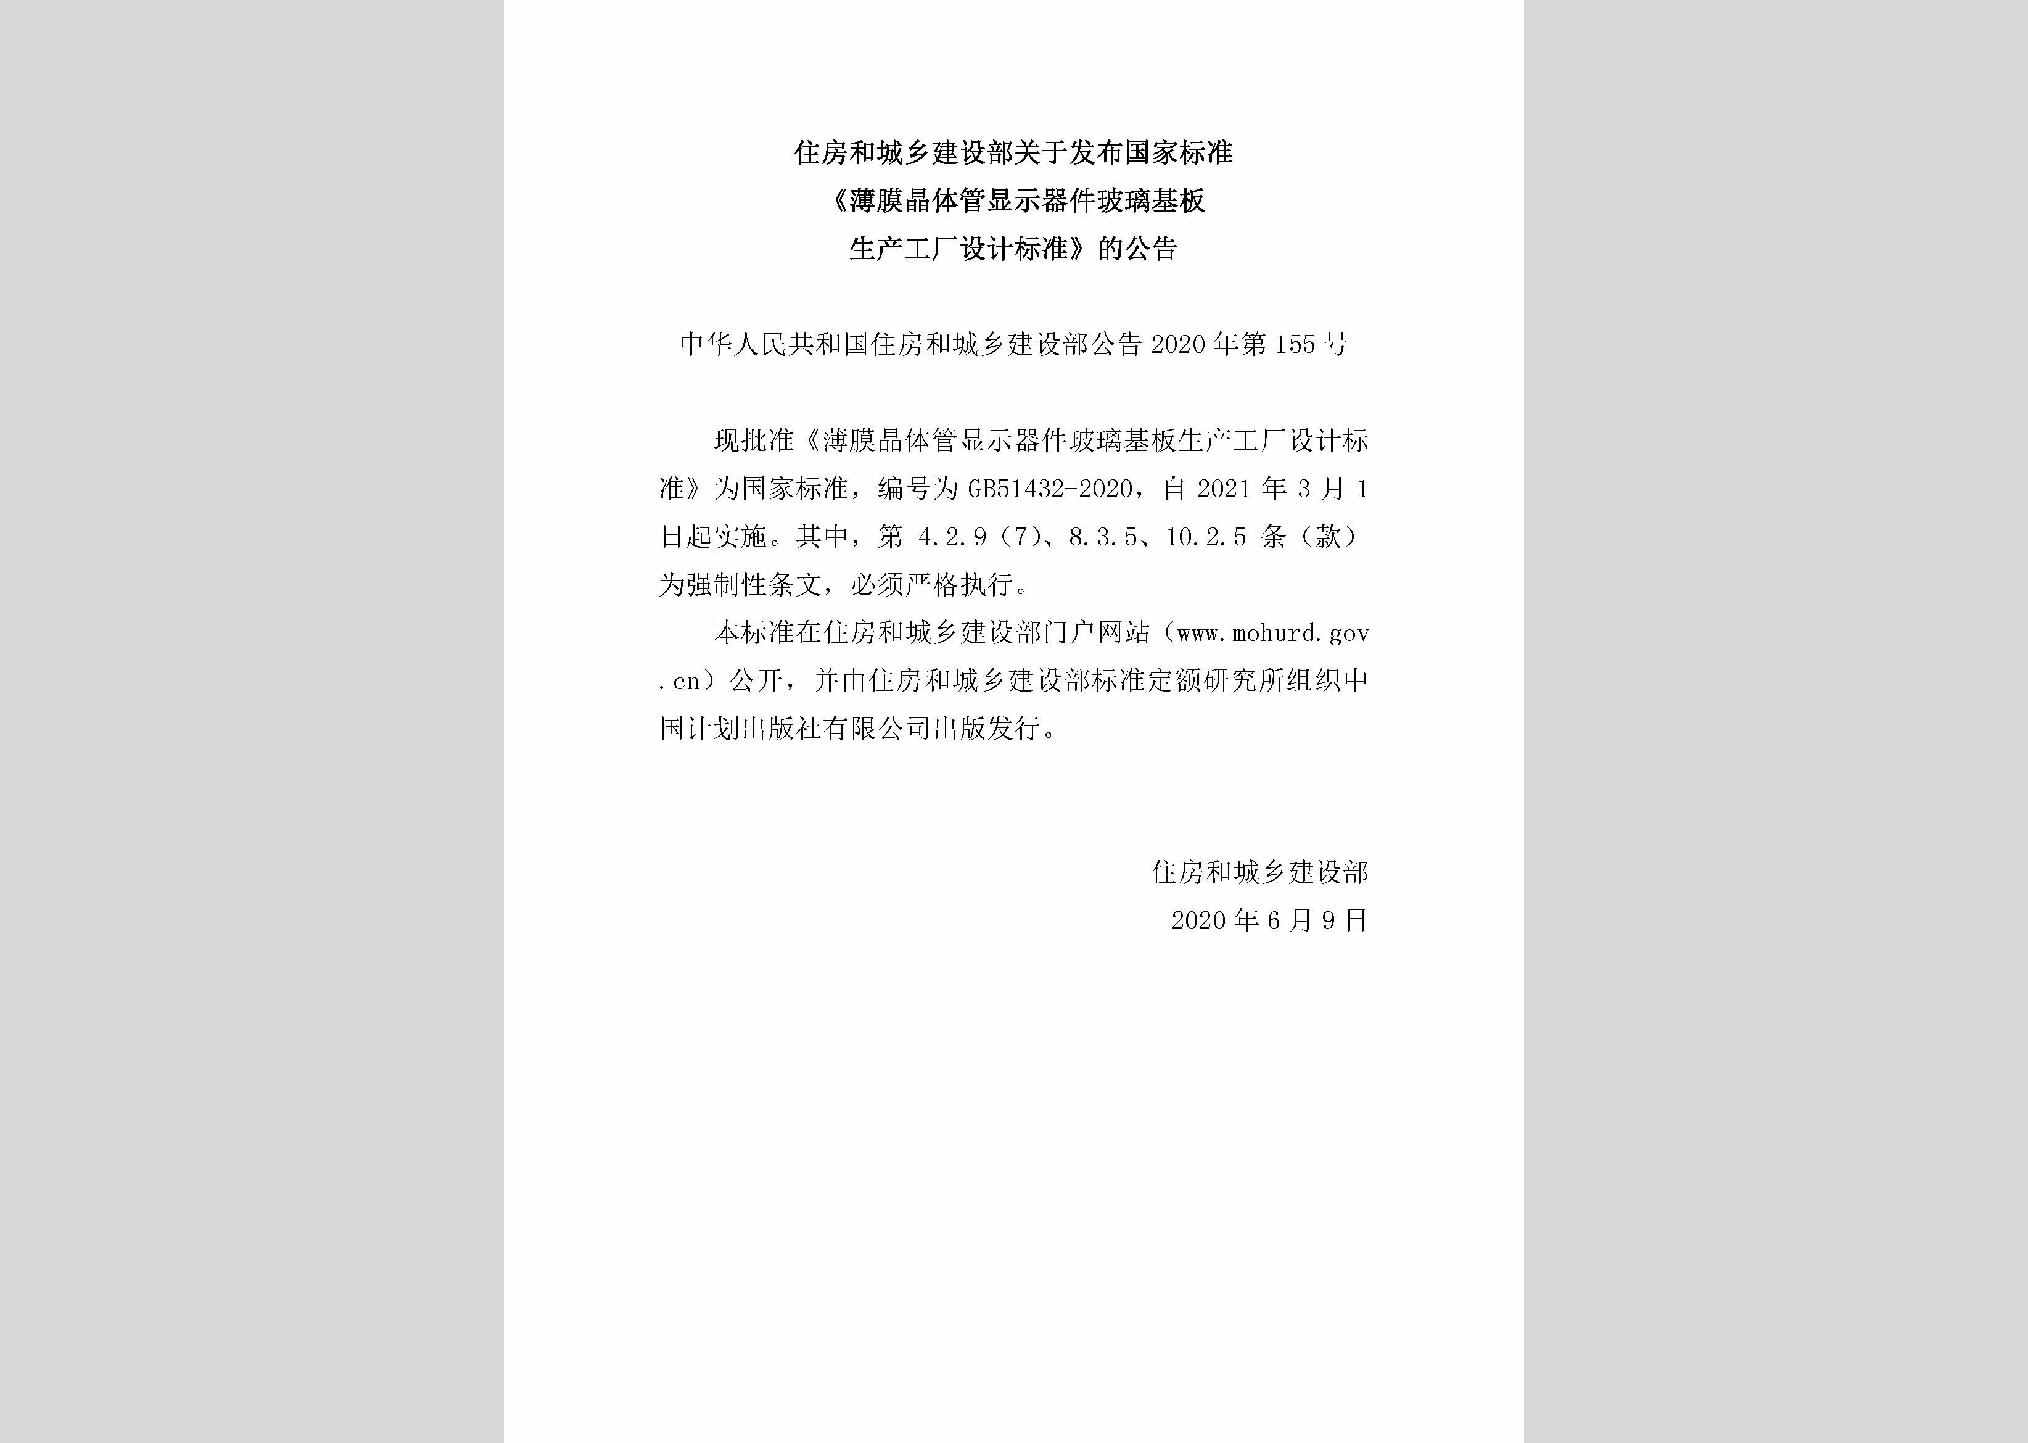 中华人民共和国住房和城乡建设部公告2020年第155号：关于发布国家标准《薄膜晶体管显示器件玻璃基板生产工厂设计标准》的公告